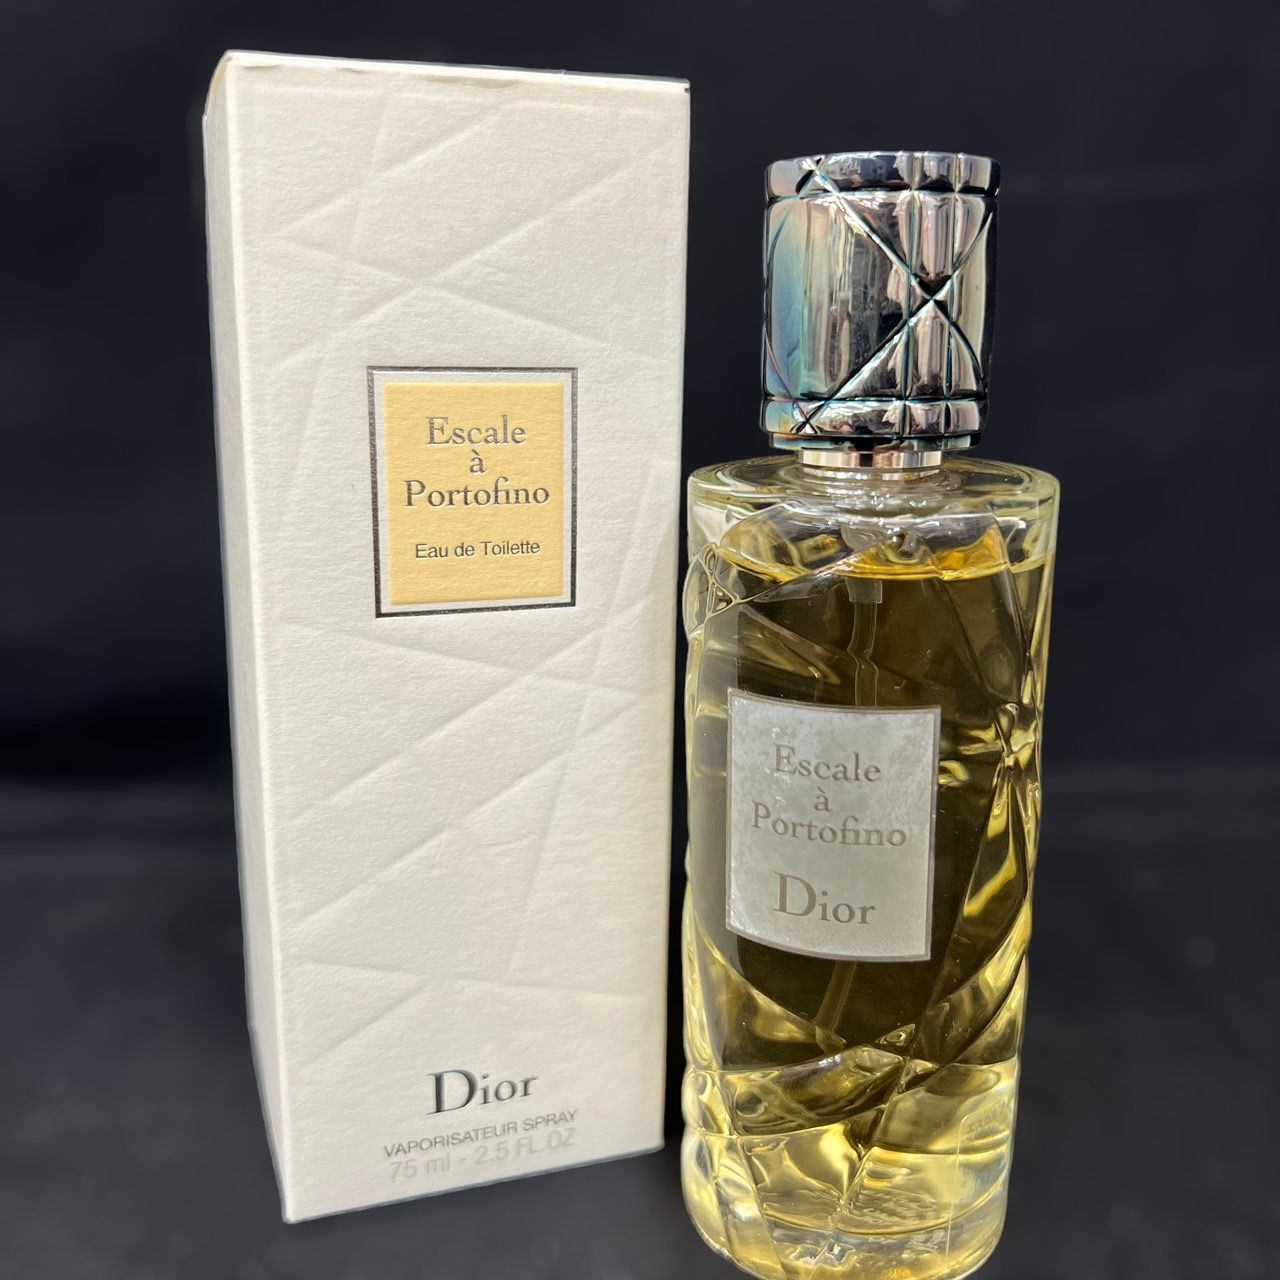 Christian Dior クリスチャンディオール Escale a portofino エスカル ア ポルトフィーノ EDT オードトワレ  75ml 残量約9.5割 香水